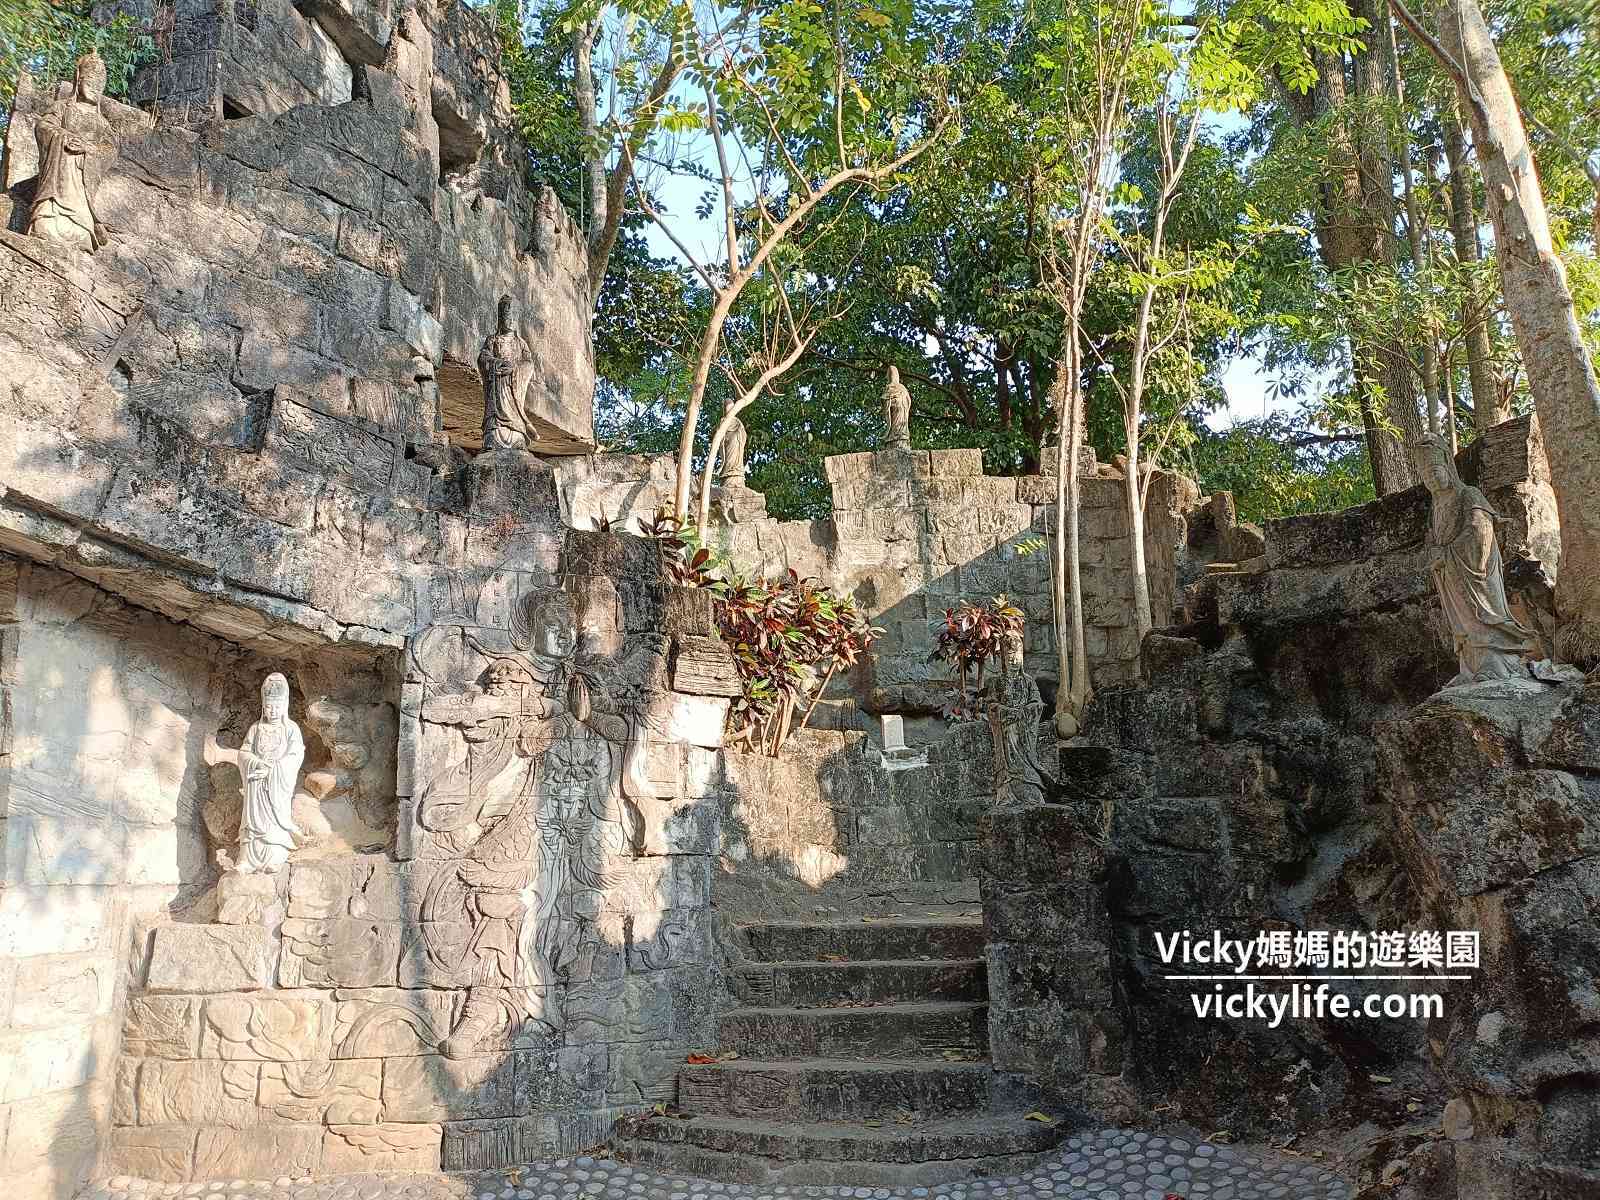 台南景點︱楠西萬佛寺 小普陀禪修公園：台版吳哥窟，金龍船、鐘乳石、古城、石林、岩洞、蝙蝠在這裡都看得到